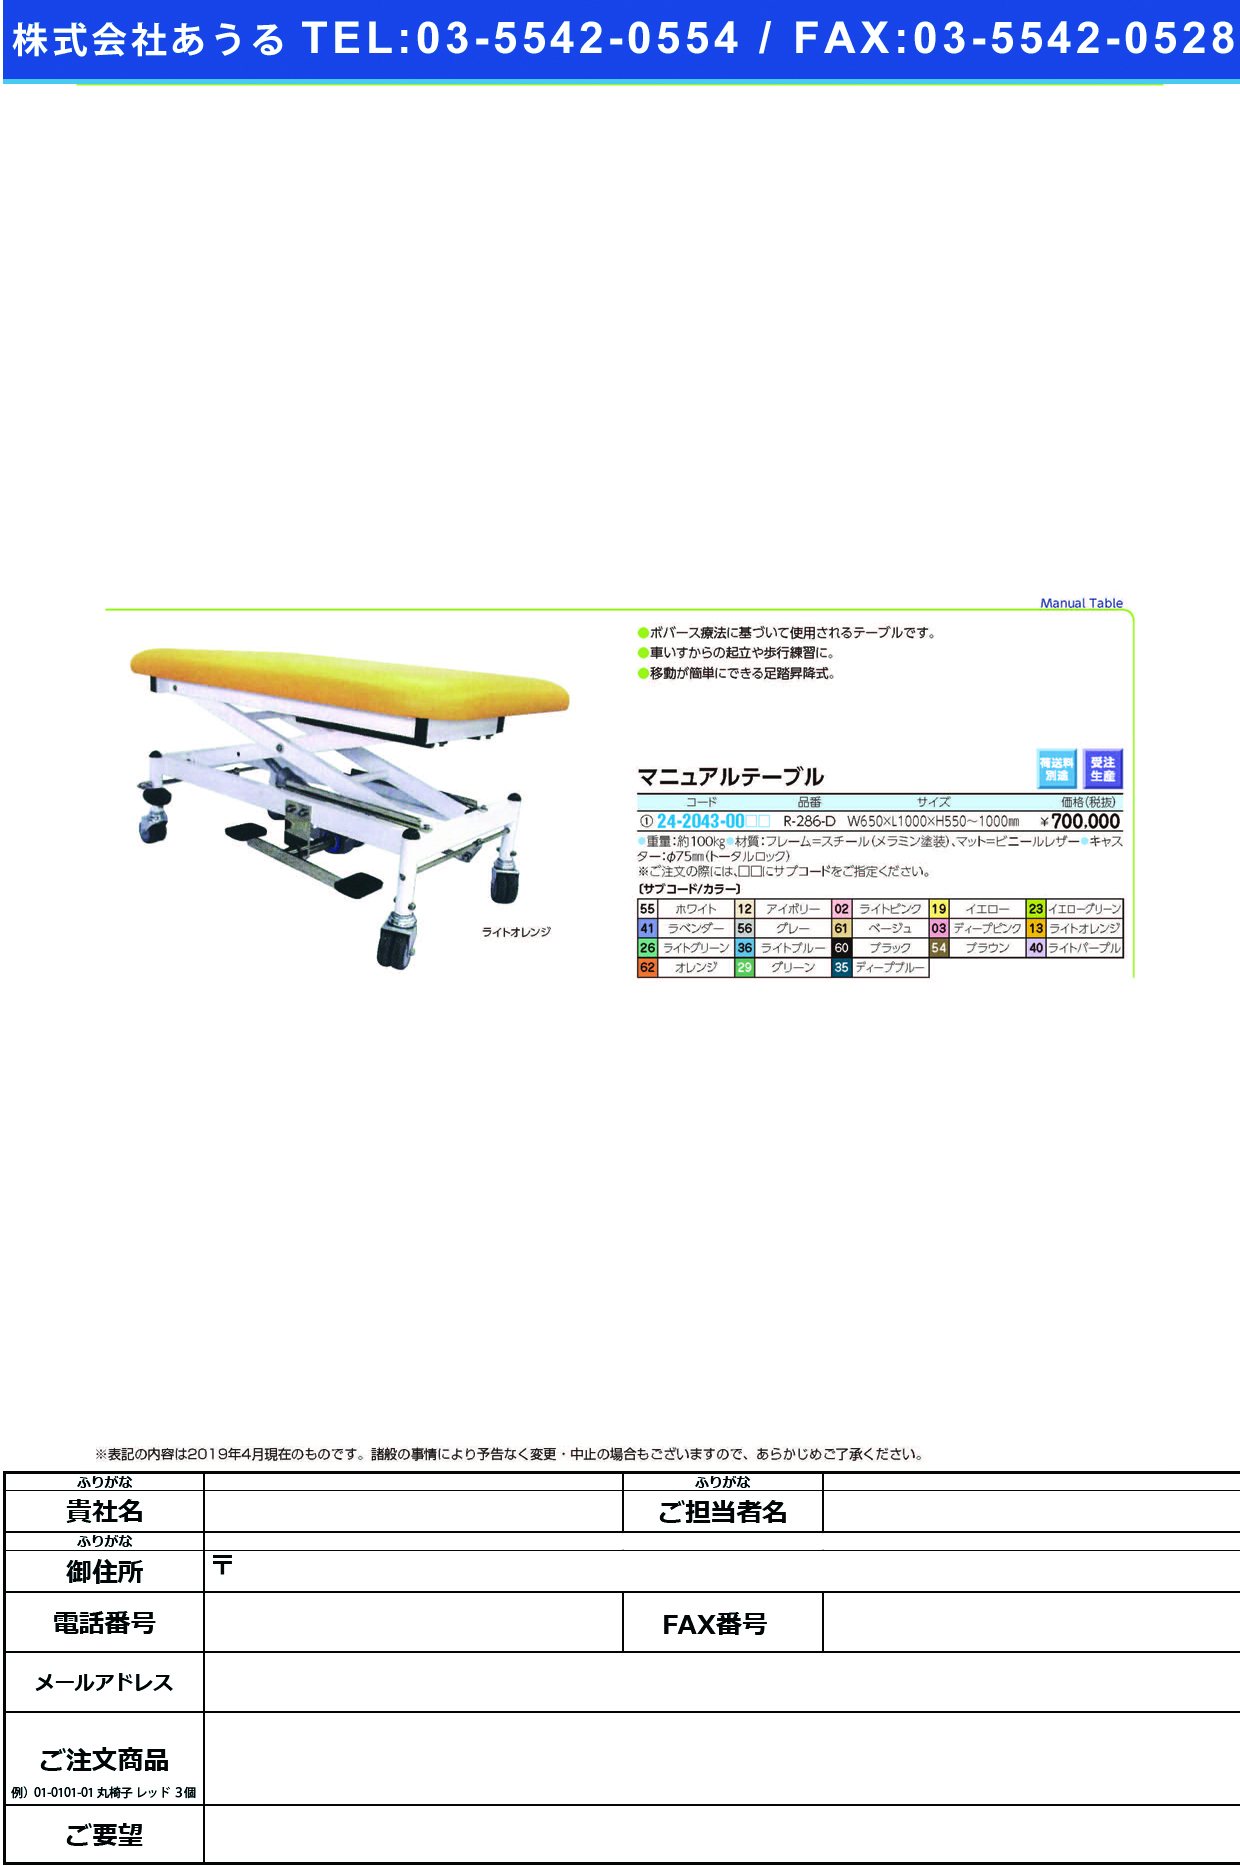 (24-2043-00)マニュアルテーブル R-286-D ﾏﾆｭｱﾙﾃｰﾌﾞﾙ ライトブルー【1台単位】【2019年カタログ商品】